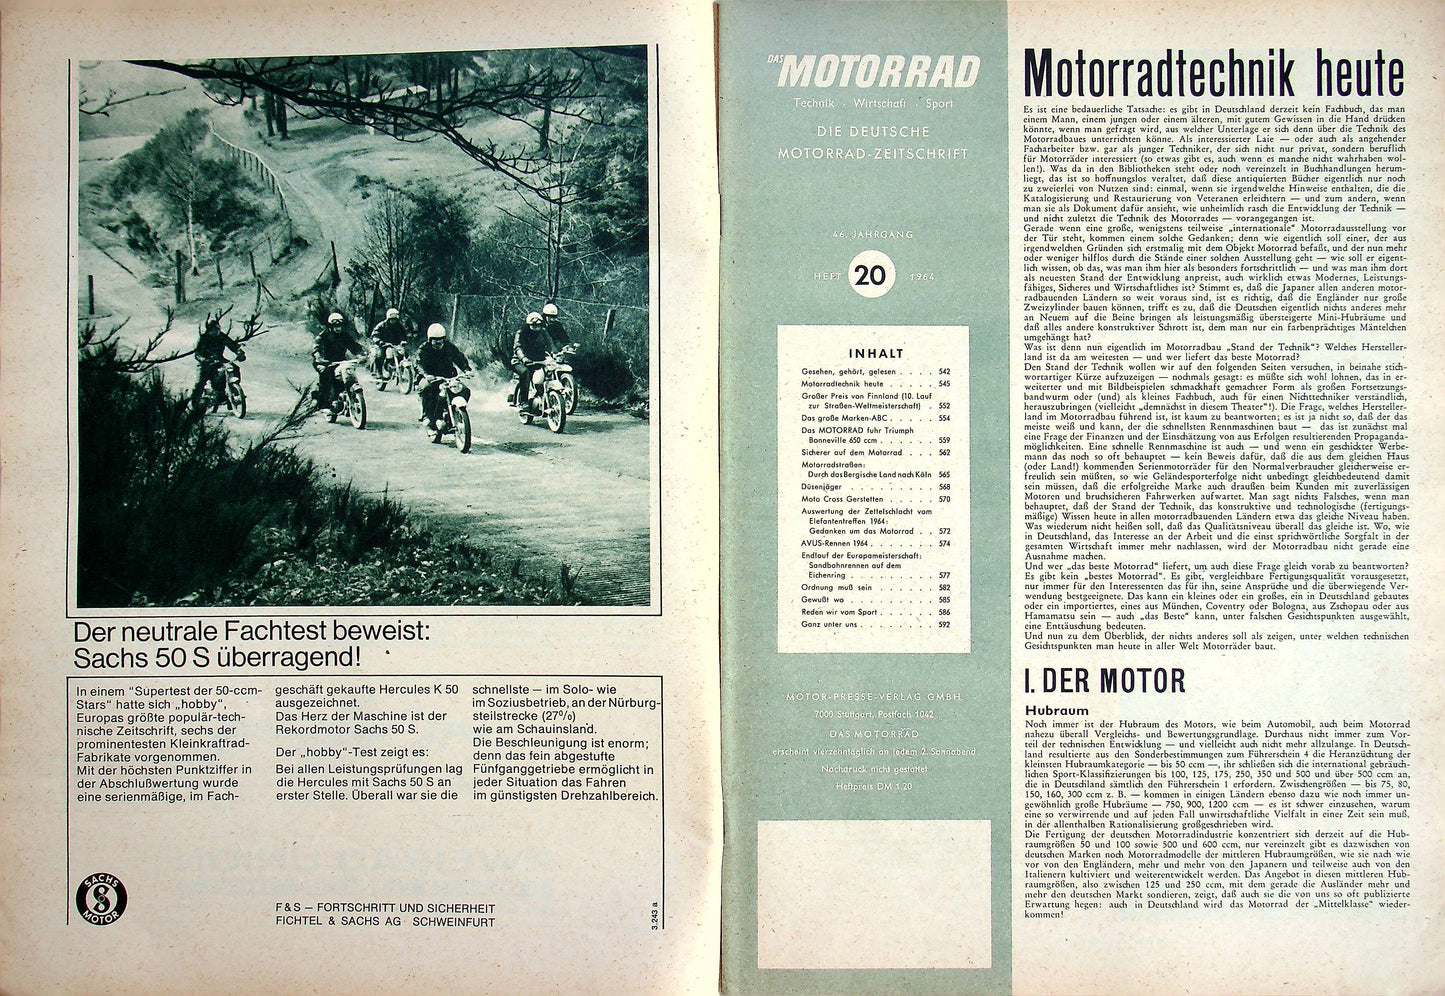 Motorrad 20/1964